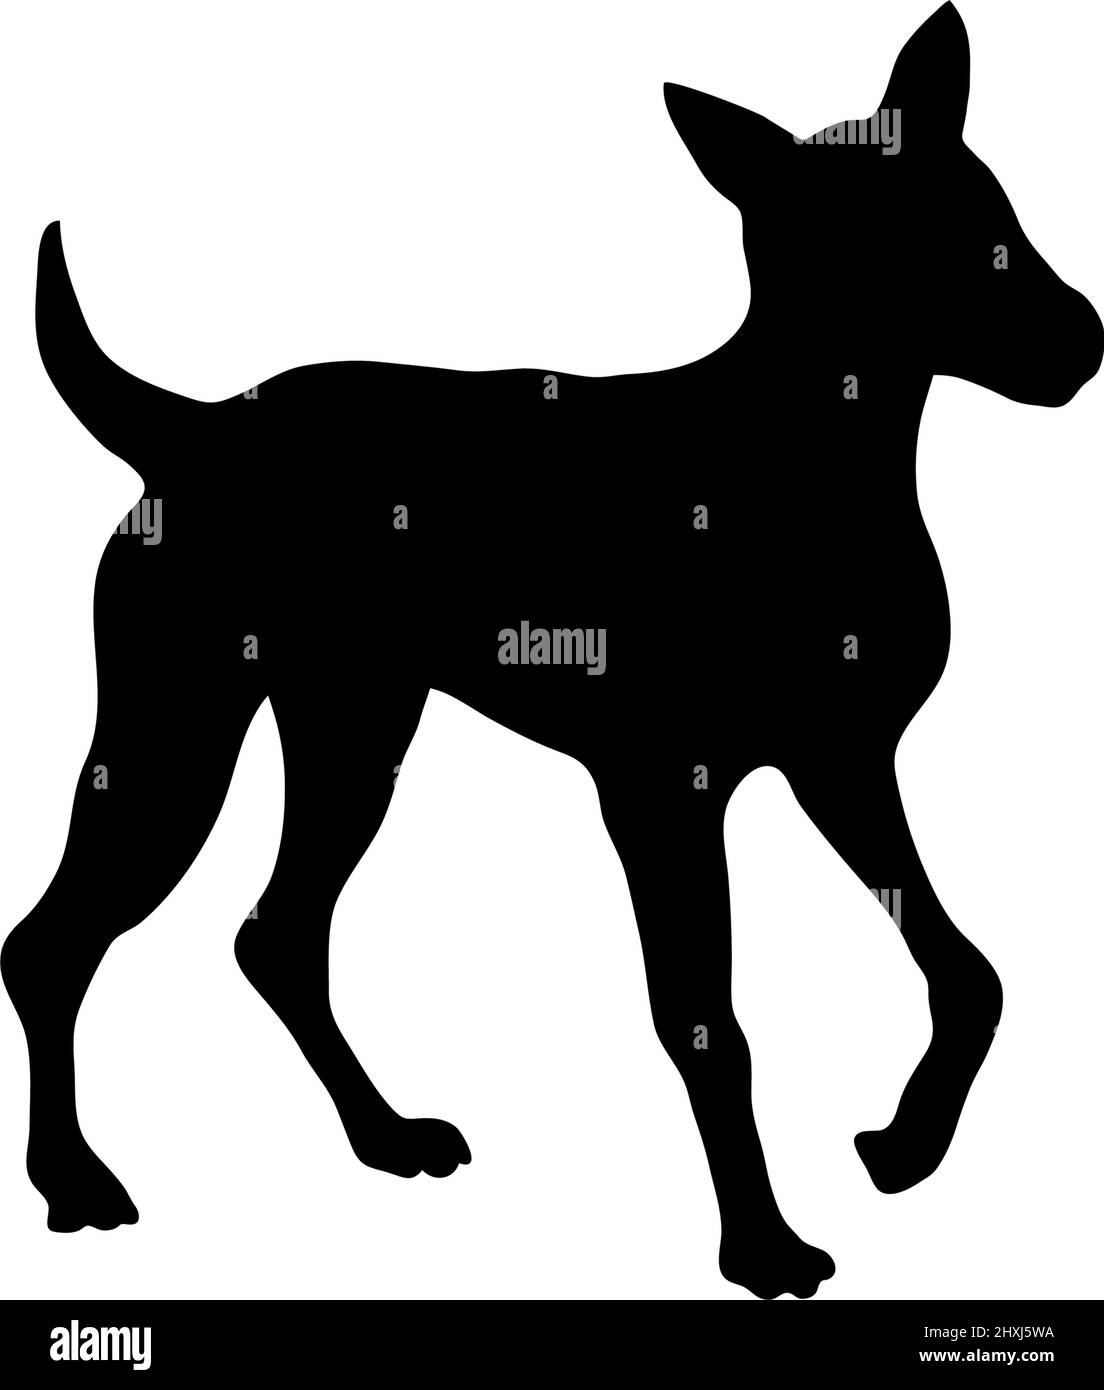 Hund Silhouette Symbol Design Vorlage Vektor isoliert Stock Vektor